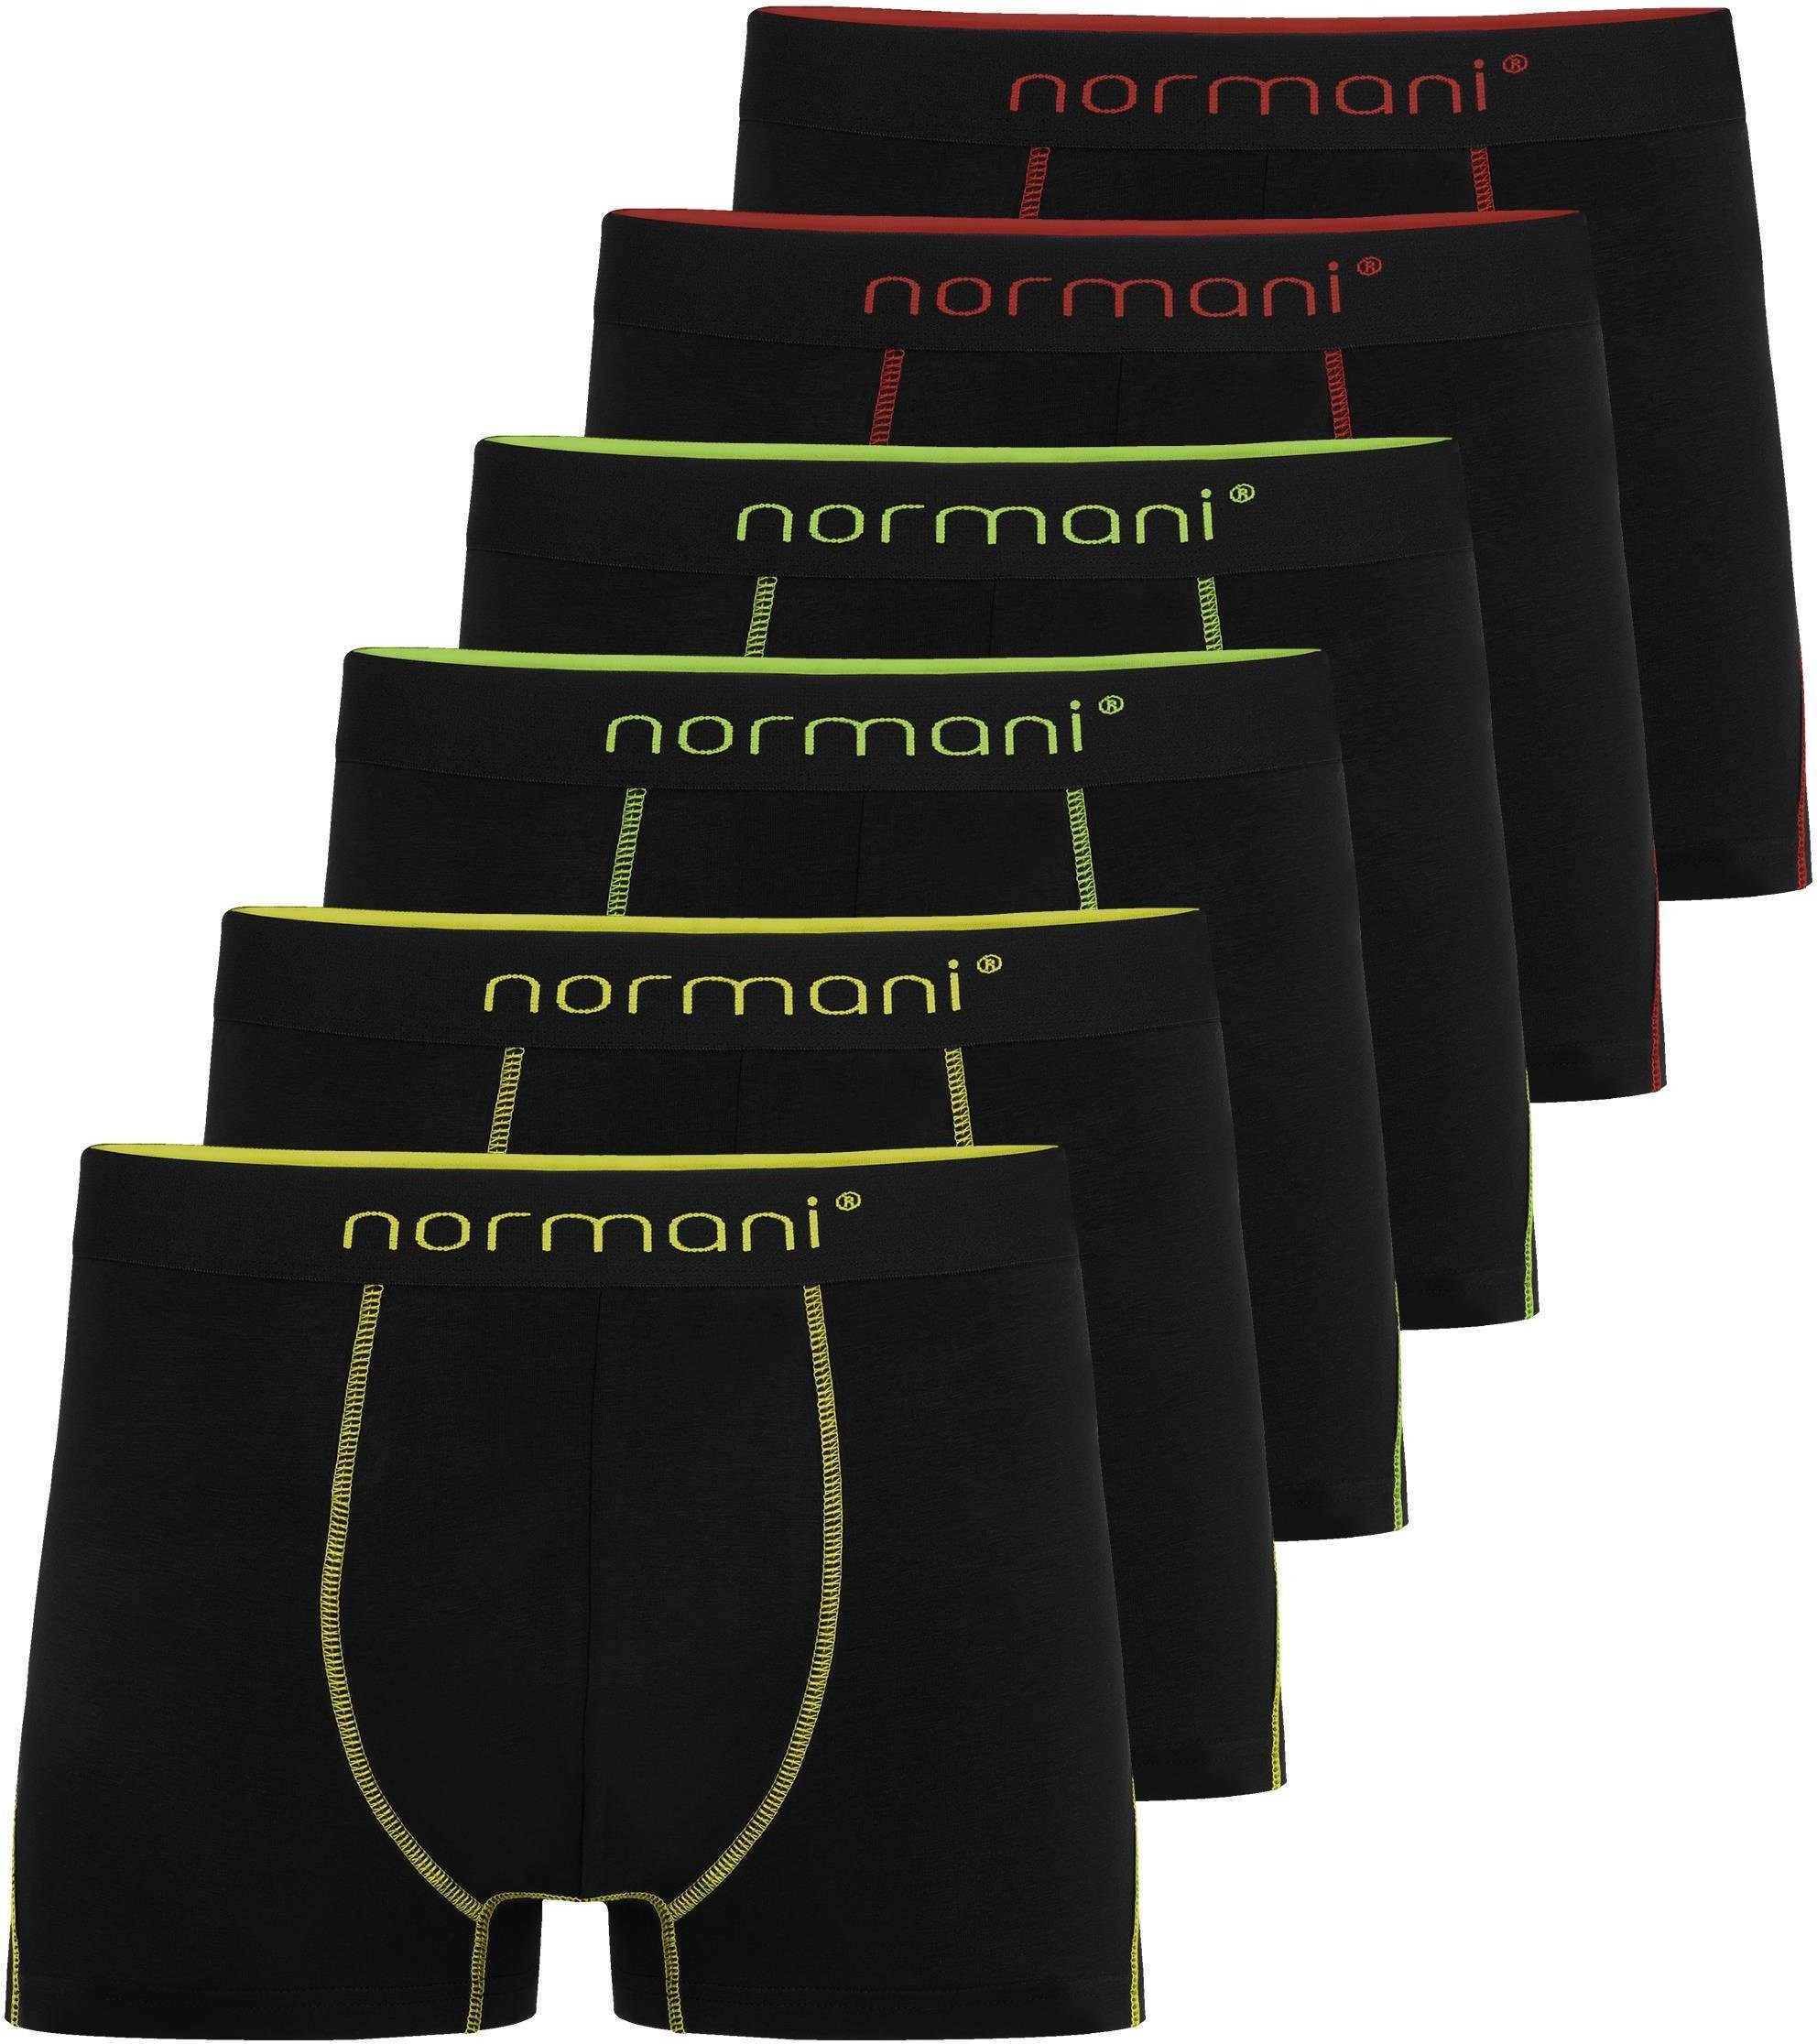 normani Boxershorts 6 Herren Baumwoll-Boxershorts Unterhose aus atmungsaktiver Baumwolle für Männer Gelb/Grün/Rot